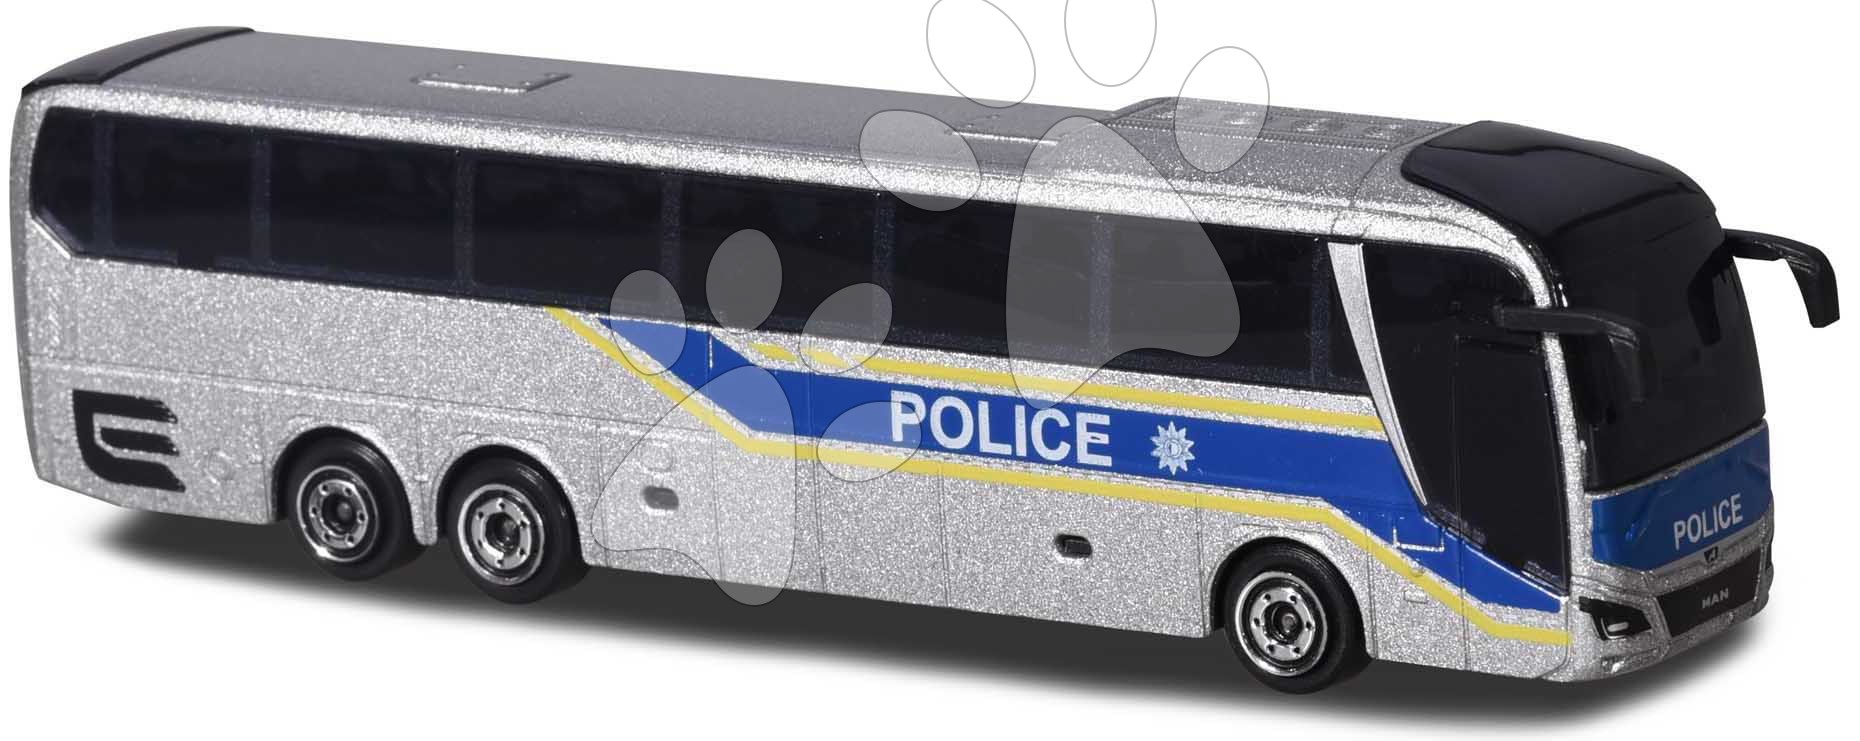 Autobus MAN City Bus Majorette s odpružením 13 cm délka různé druhy